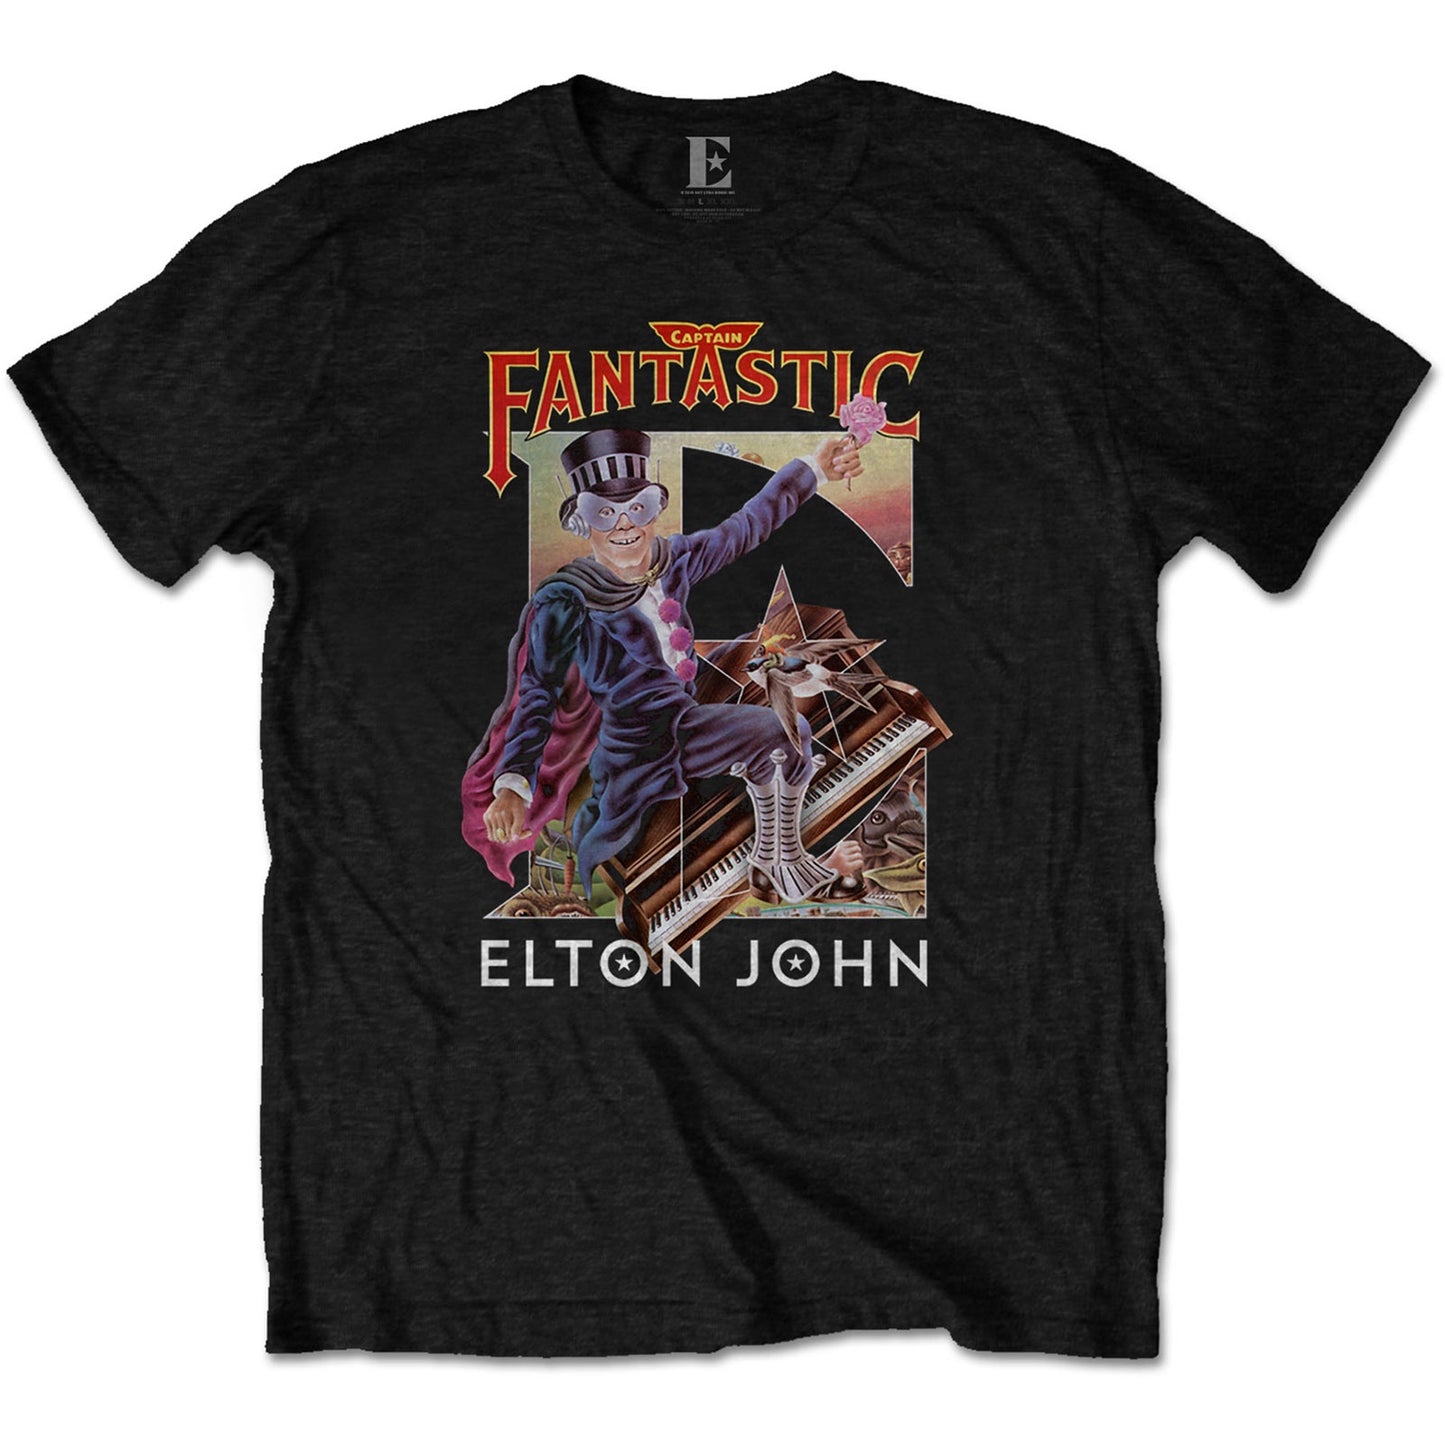 ELTON JOHN - Captain Fantastic T-Shirt